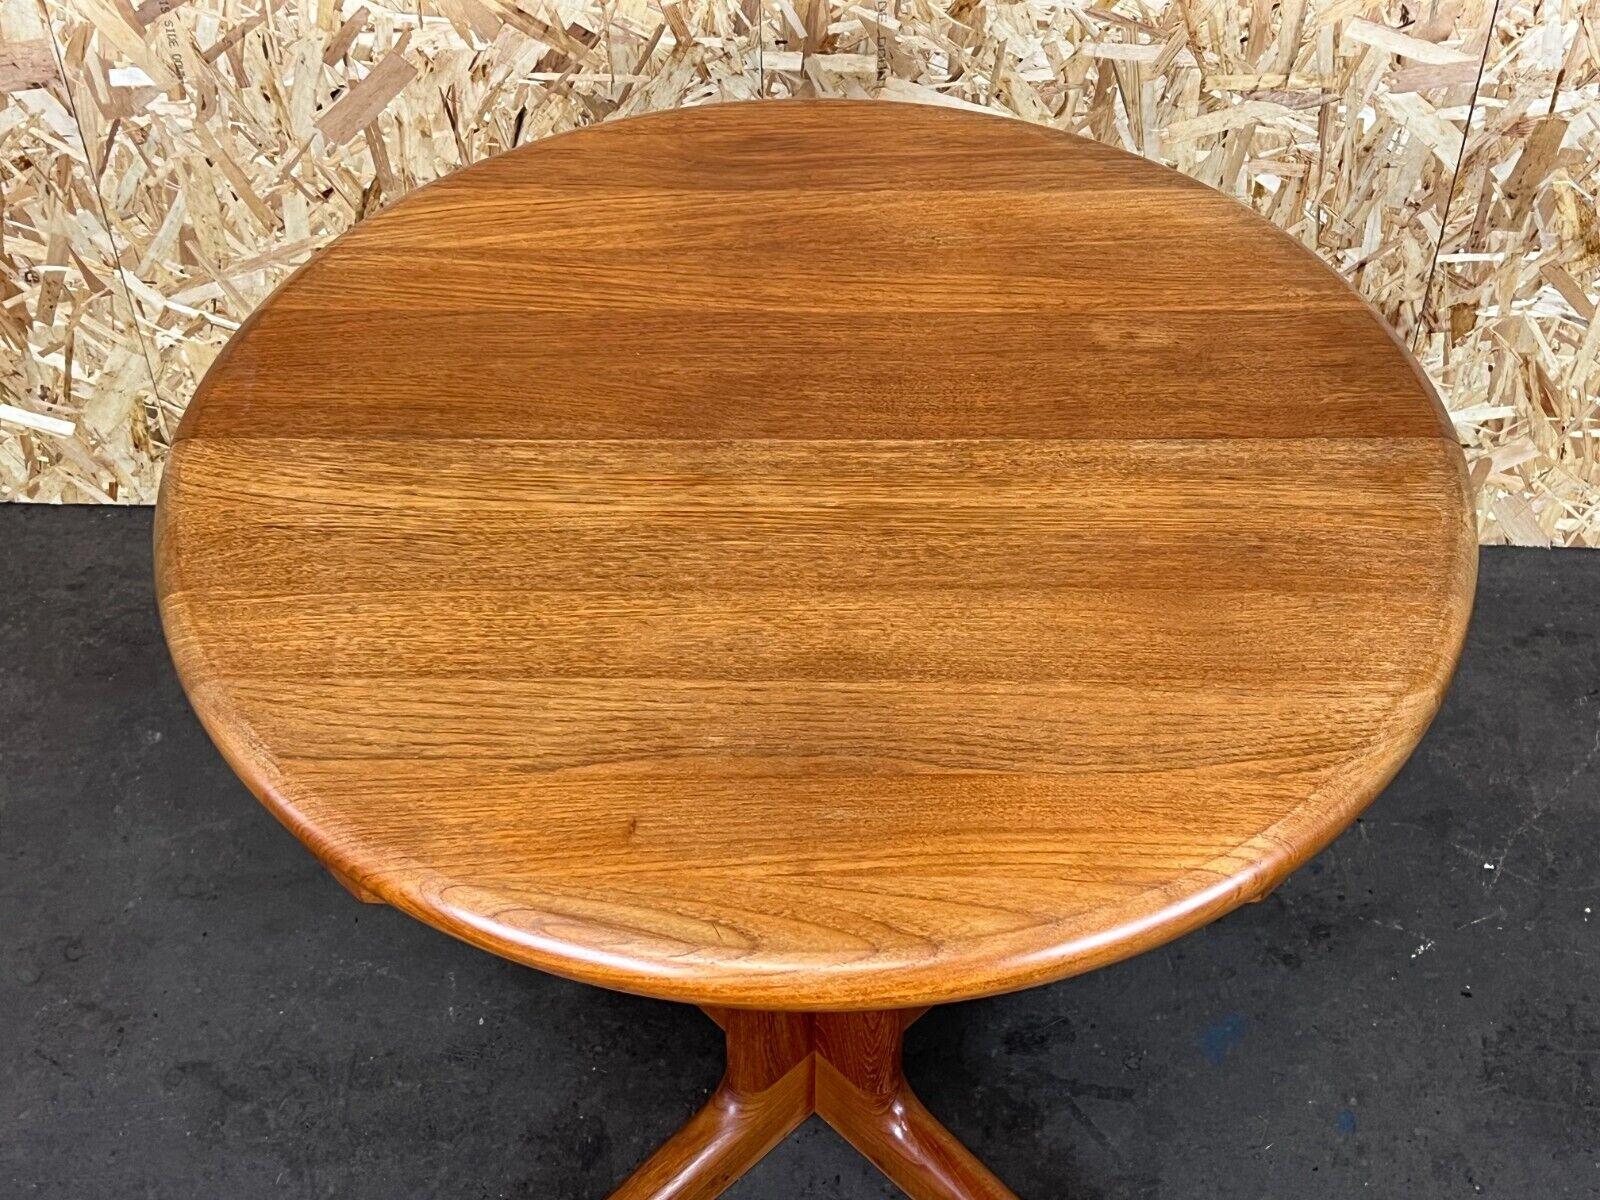 1960s-1970s Teak Dining Table Side Table Korup Design Danish Denmark 1